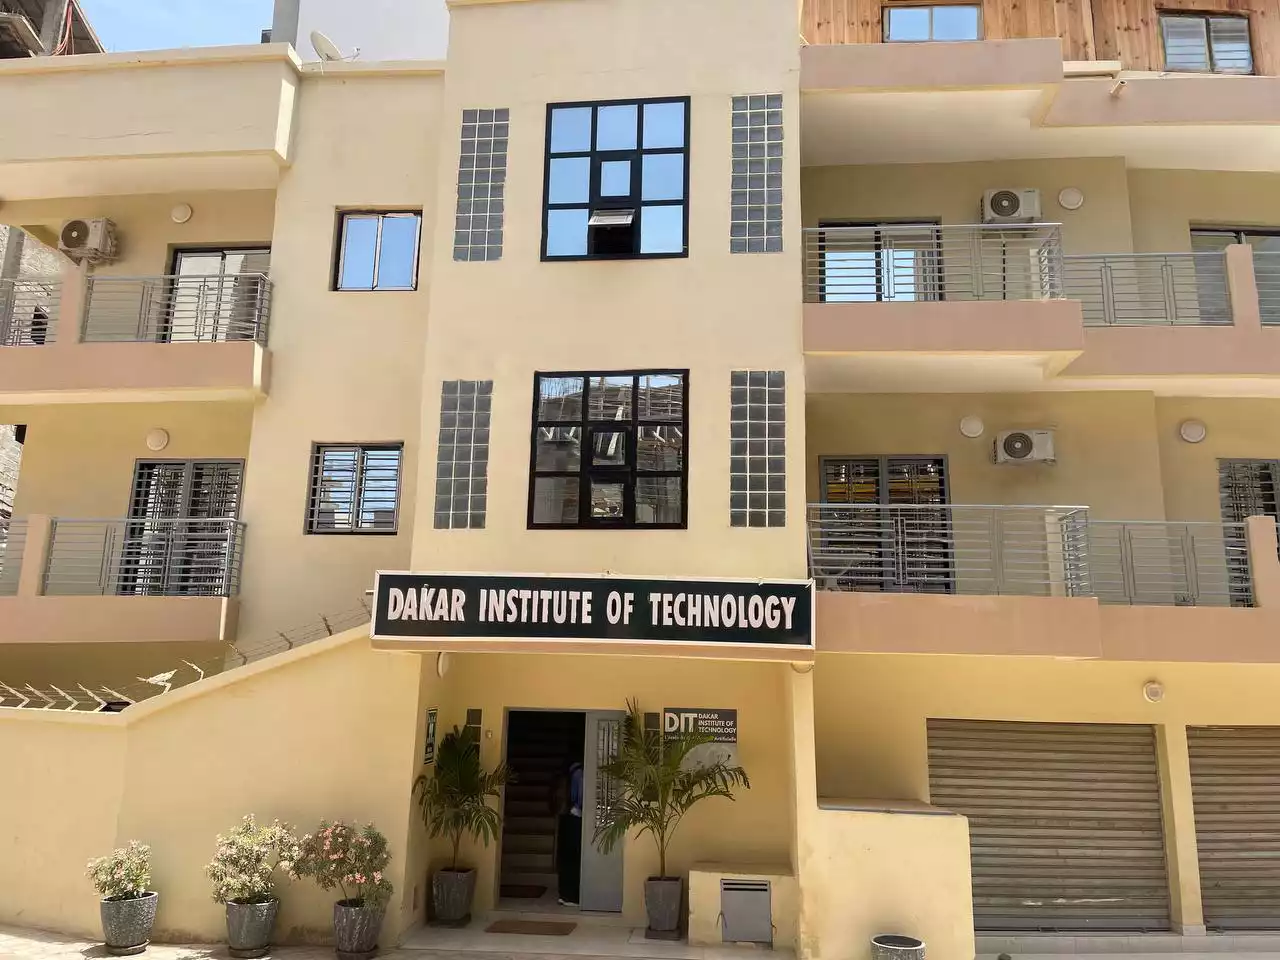 Le bâtiment principal du Dakar Institute of Technology (DIT)